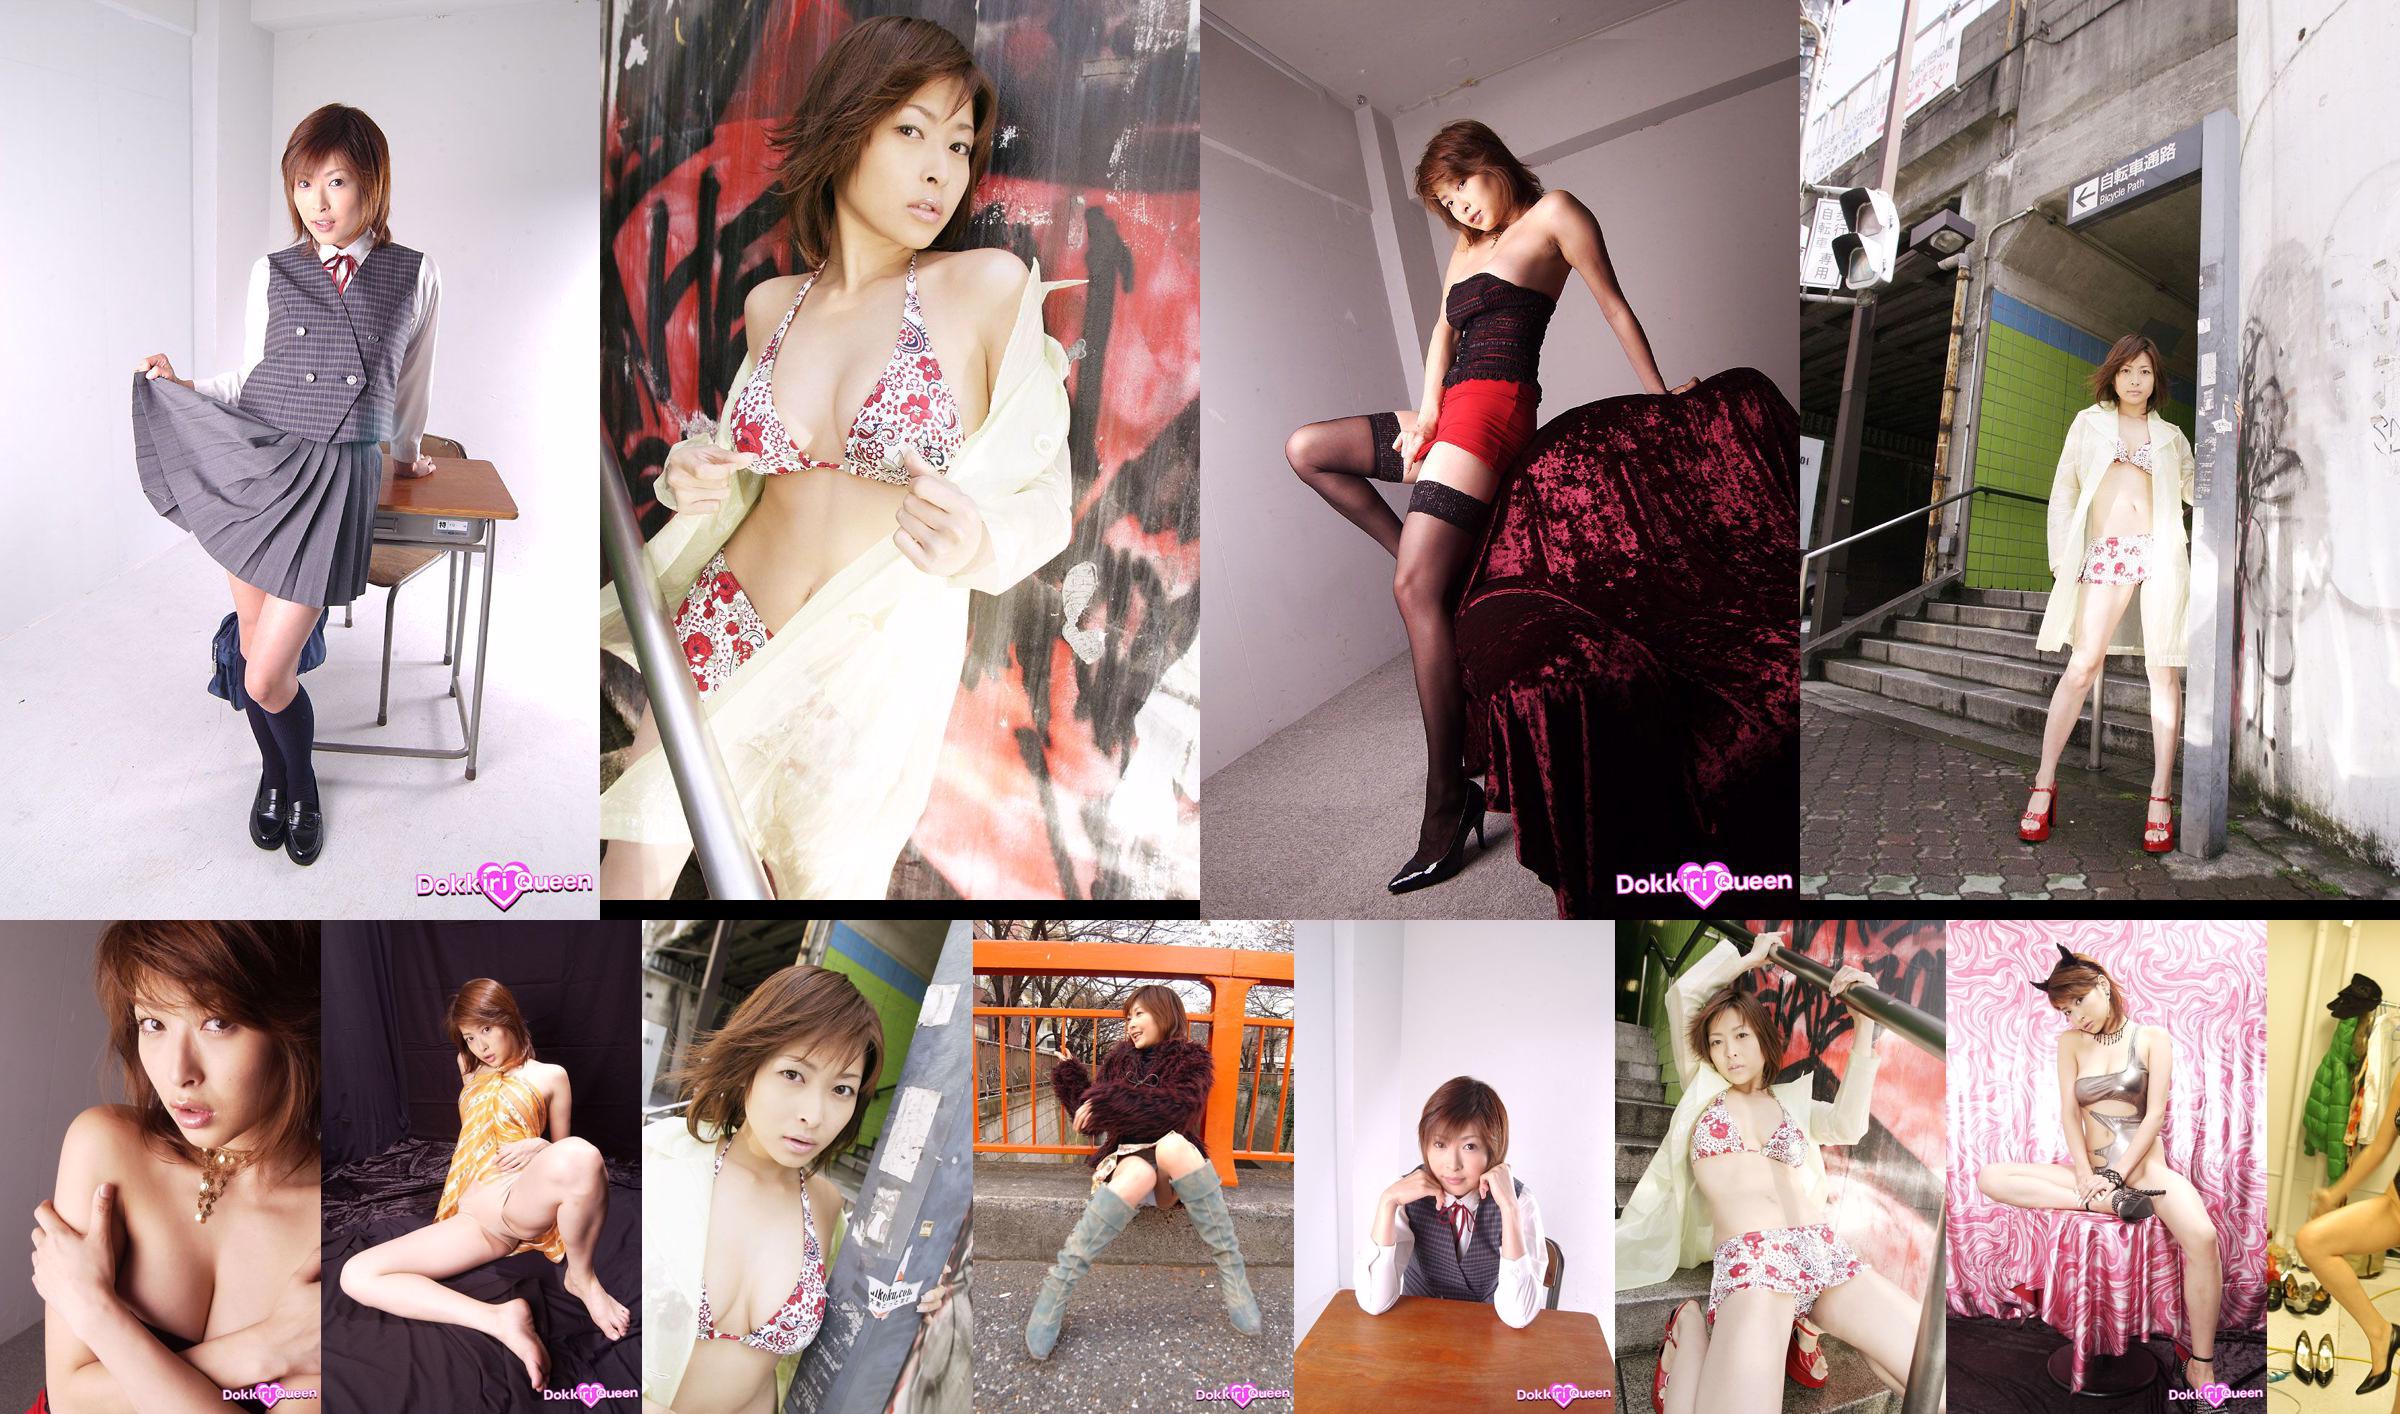 [X-City] Dokkiri Queen No.017 Nana Natsume / Nana Natsome Profile No.4c6efb Trang 1